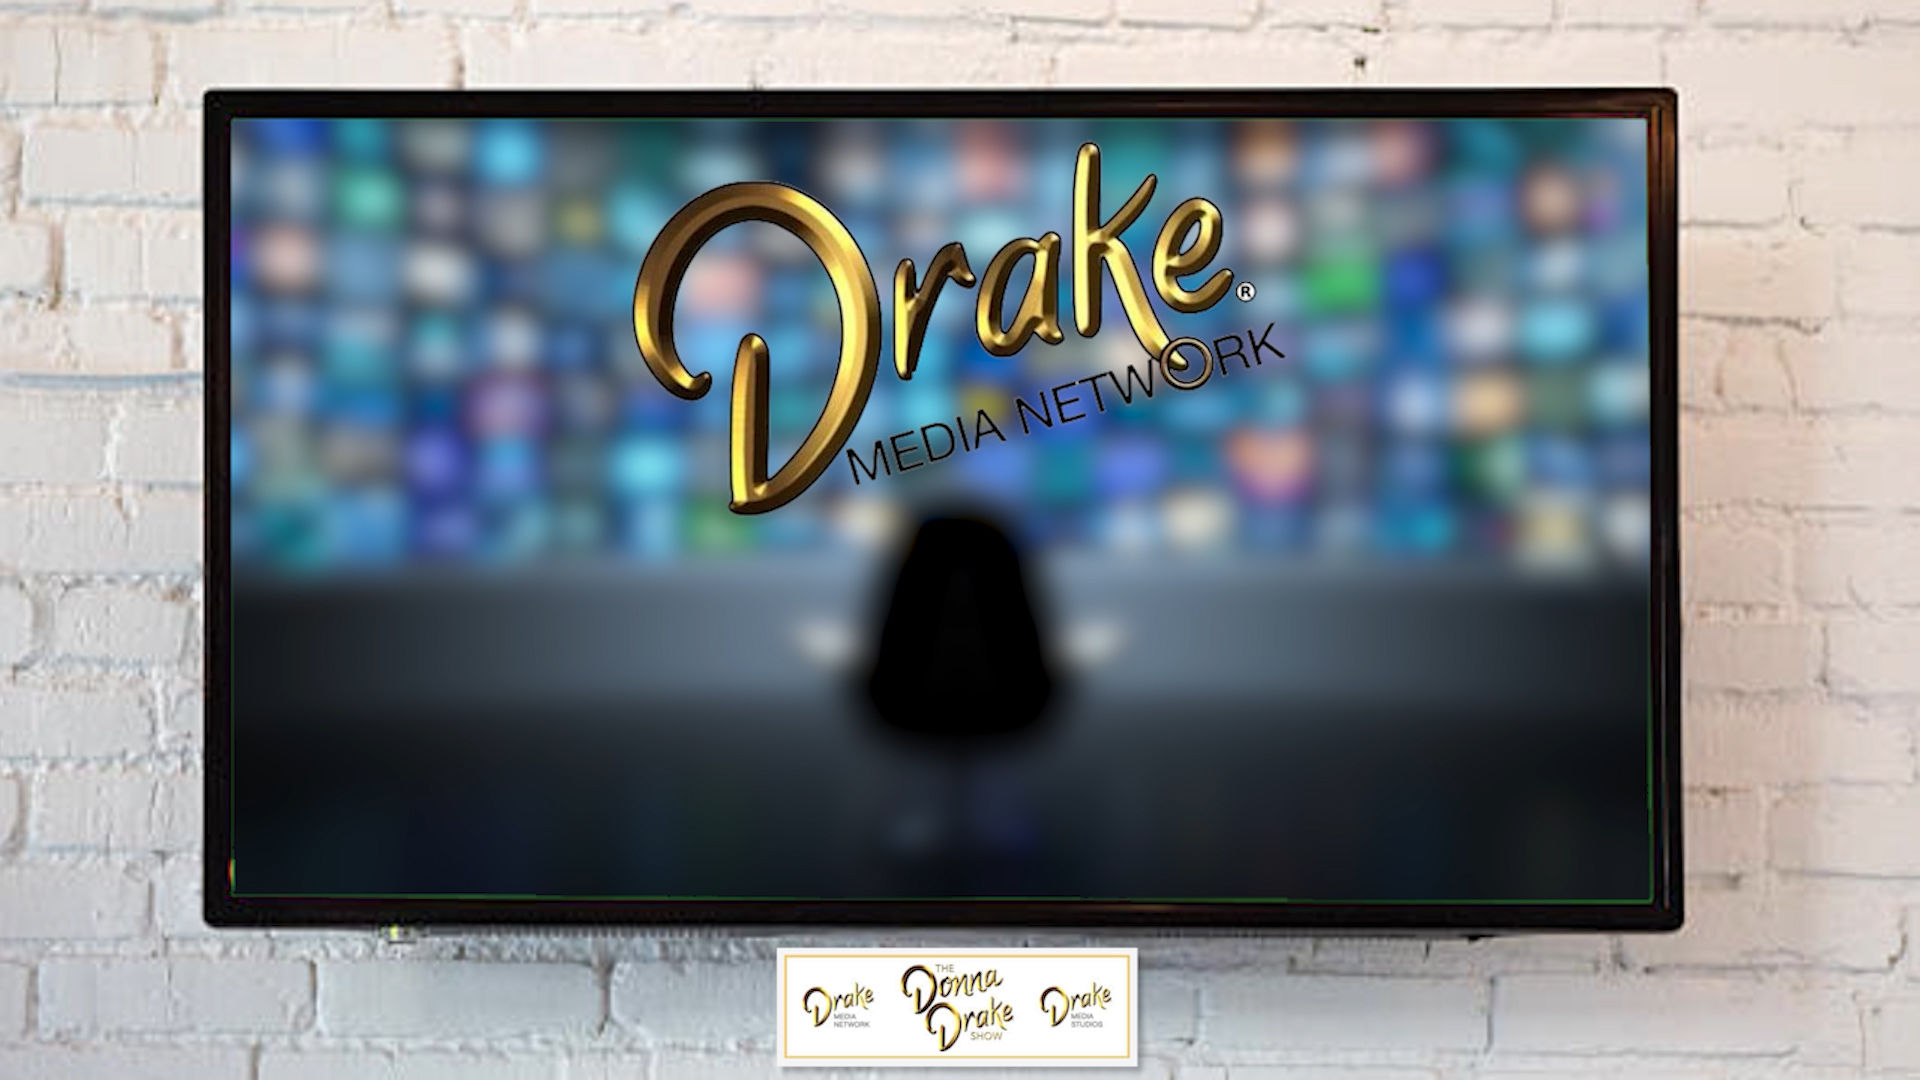 The Drake Media Network